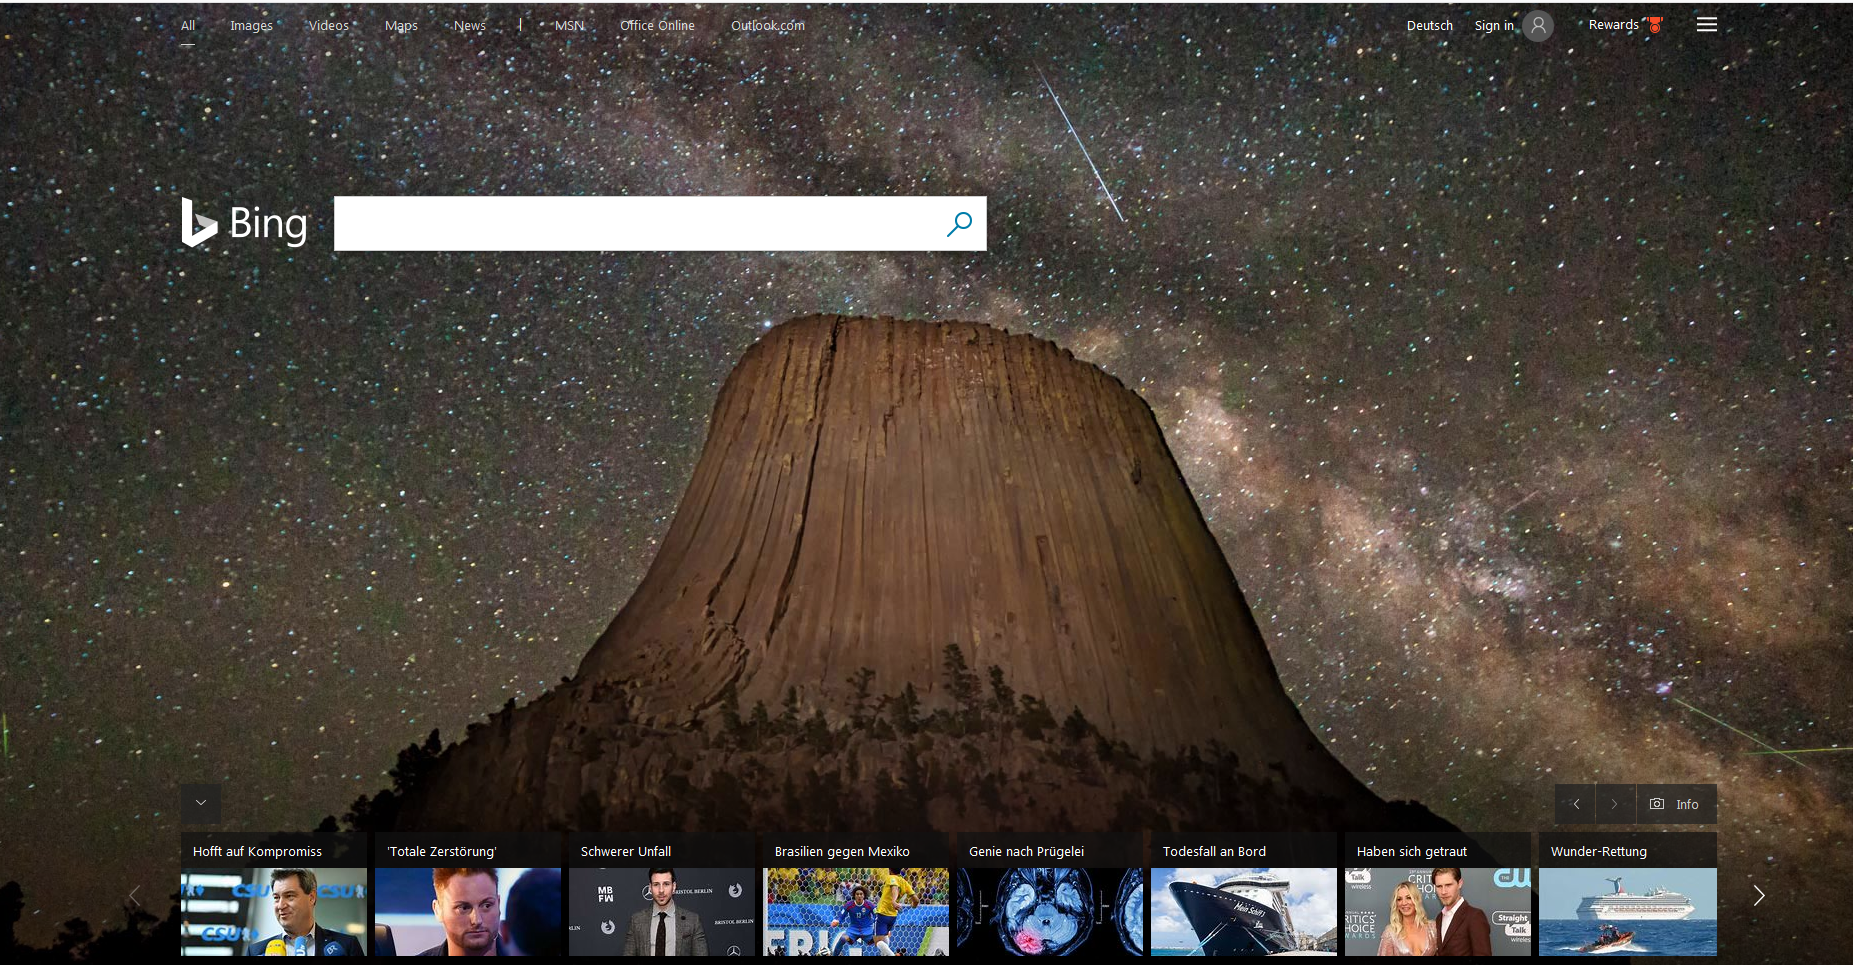 Bild zeigt das Design der Bing Suchmaschine: Foto des Devils Tower in Wyoming